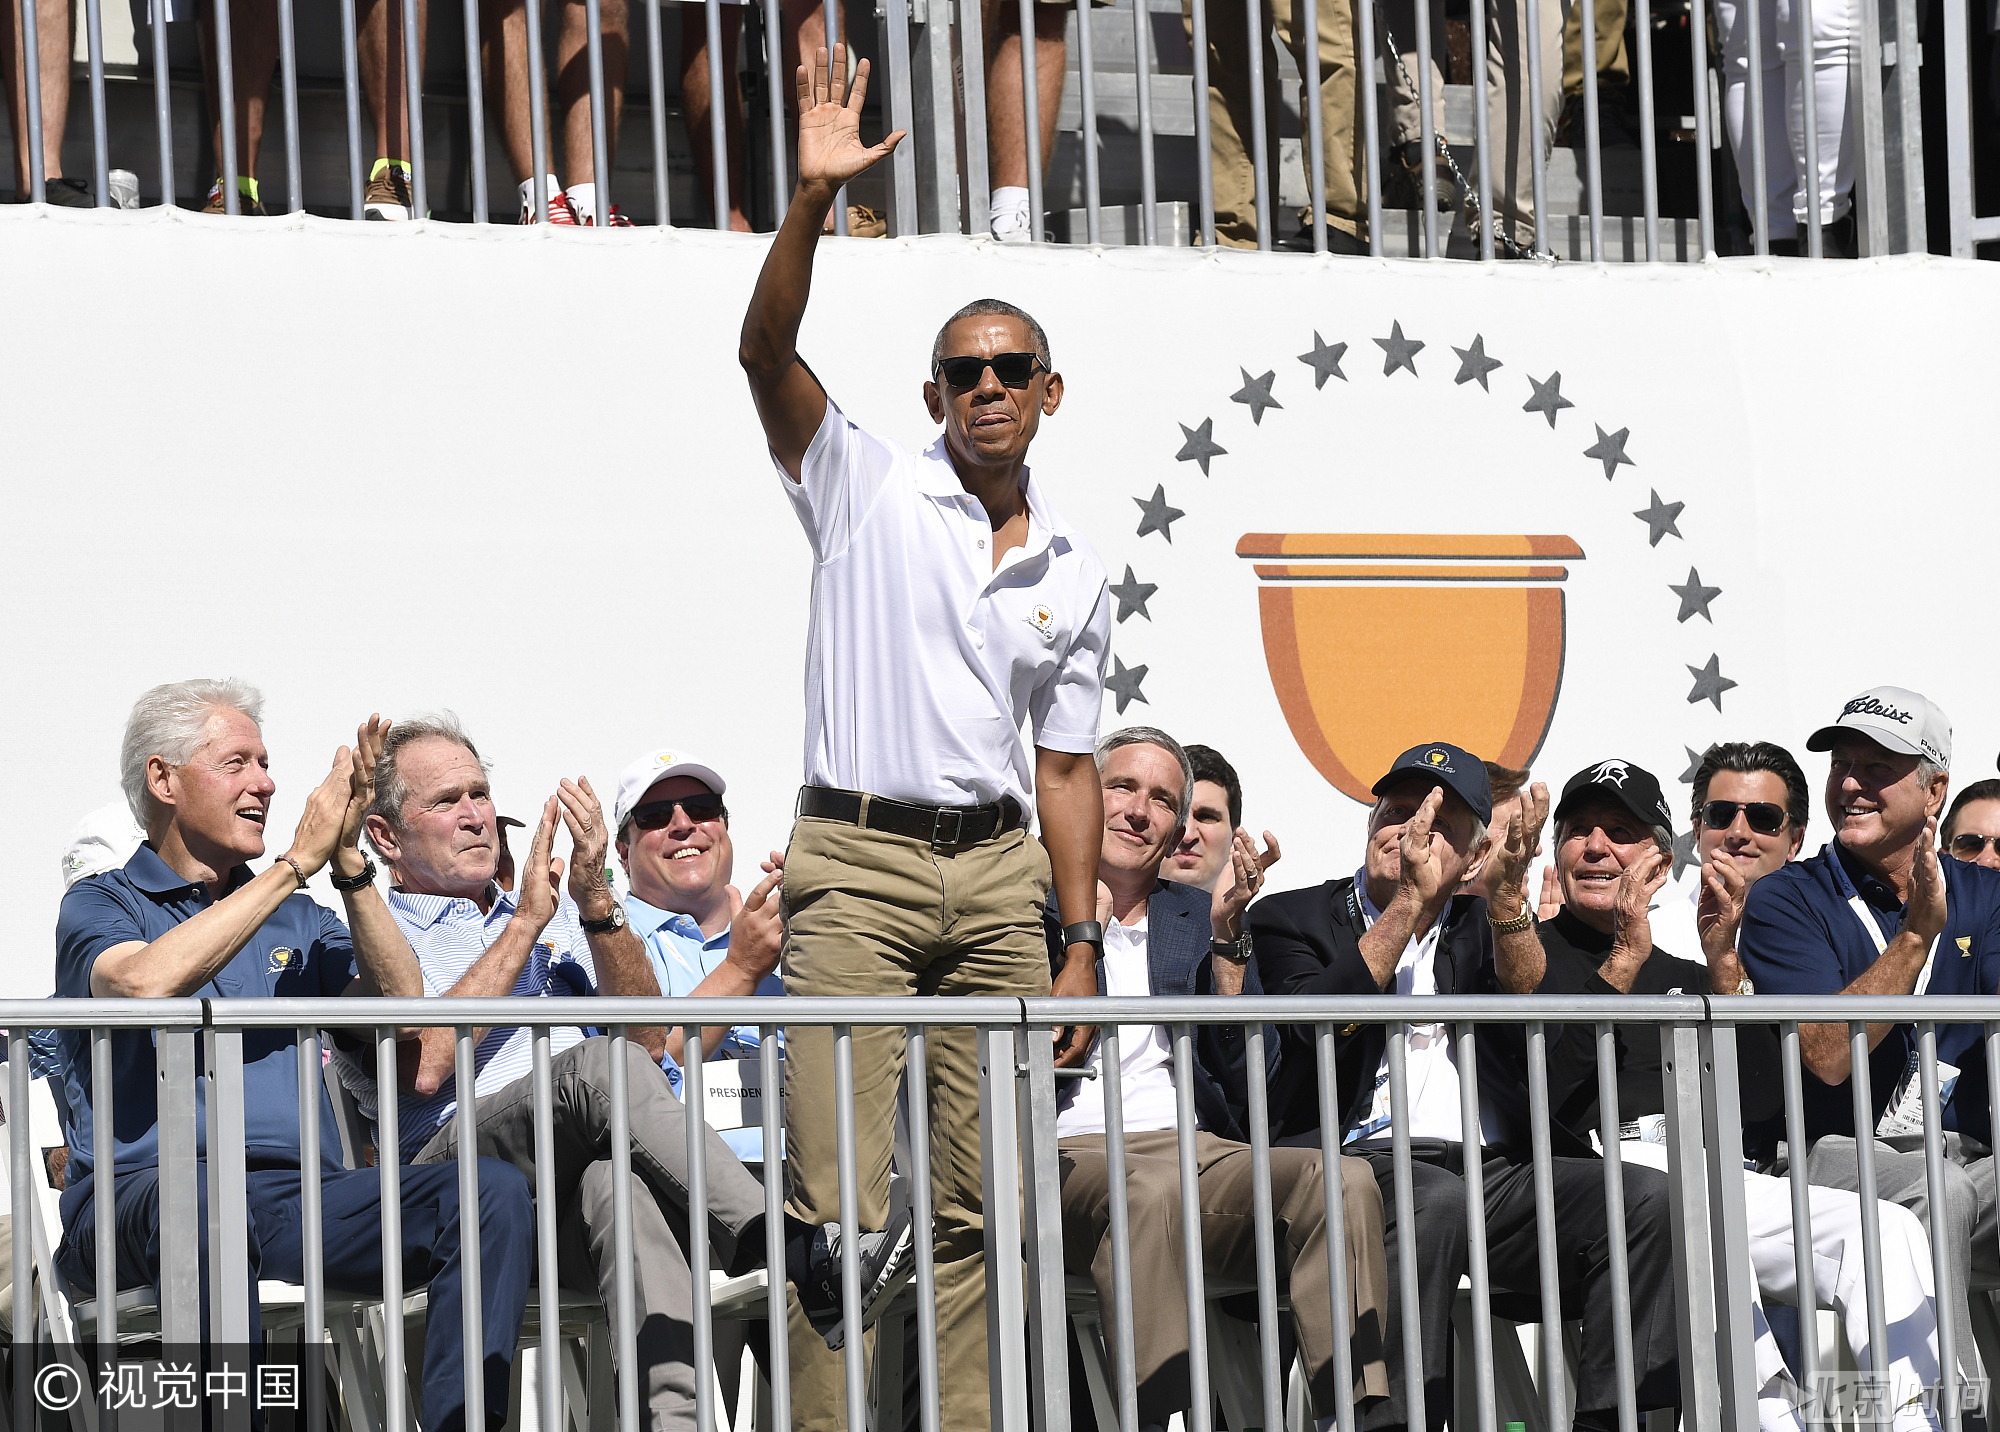 美国前总统奥巴马在现场向观众挥手致意。图/视觉中国